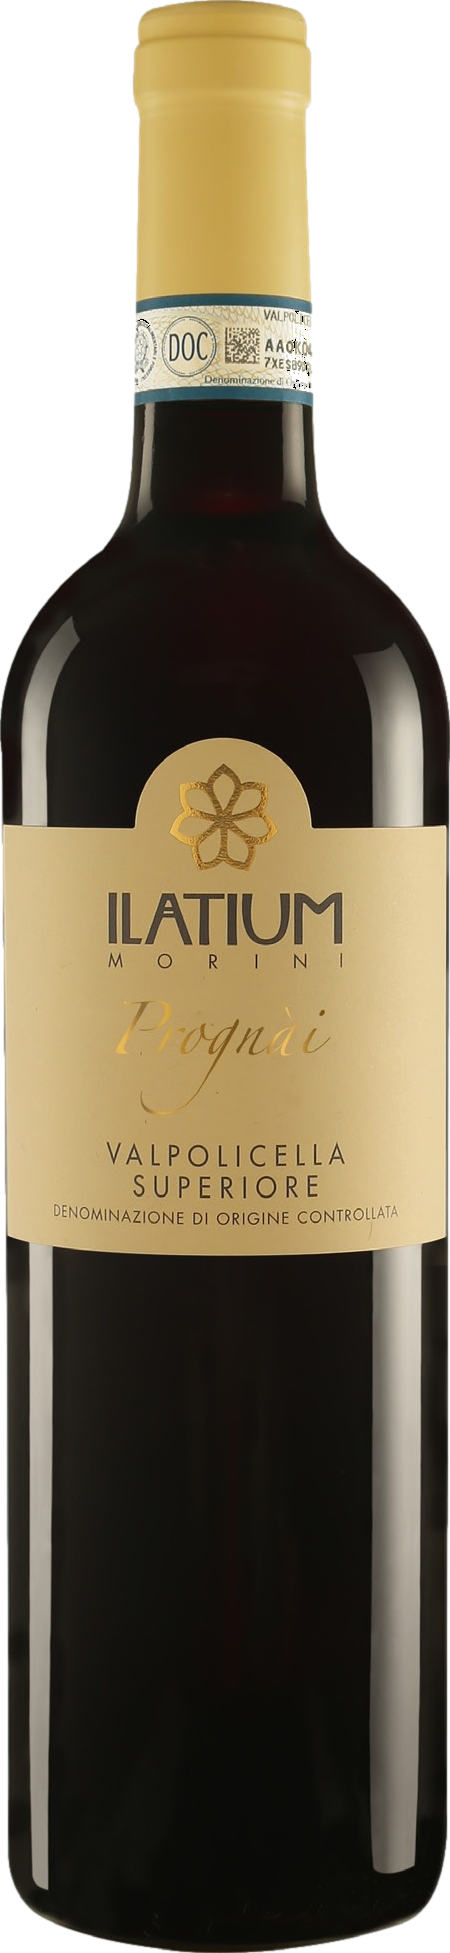 Ilatium Morini Campo Prognai Valpolicella Superiore 2017 Červené 13.0% 0.75 l